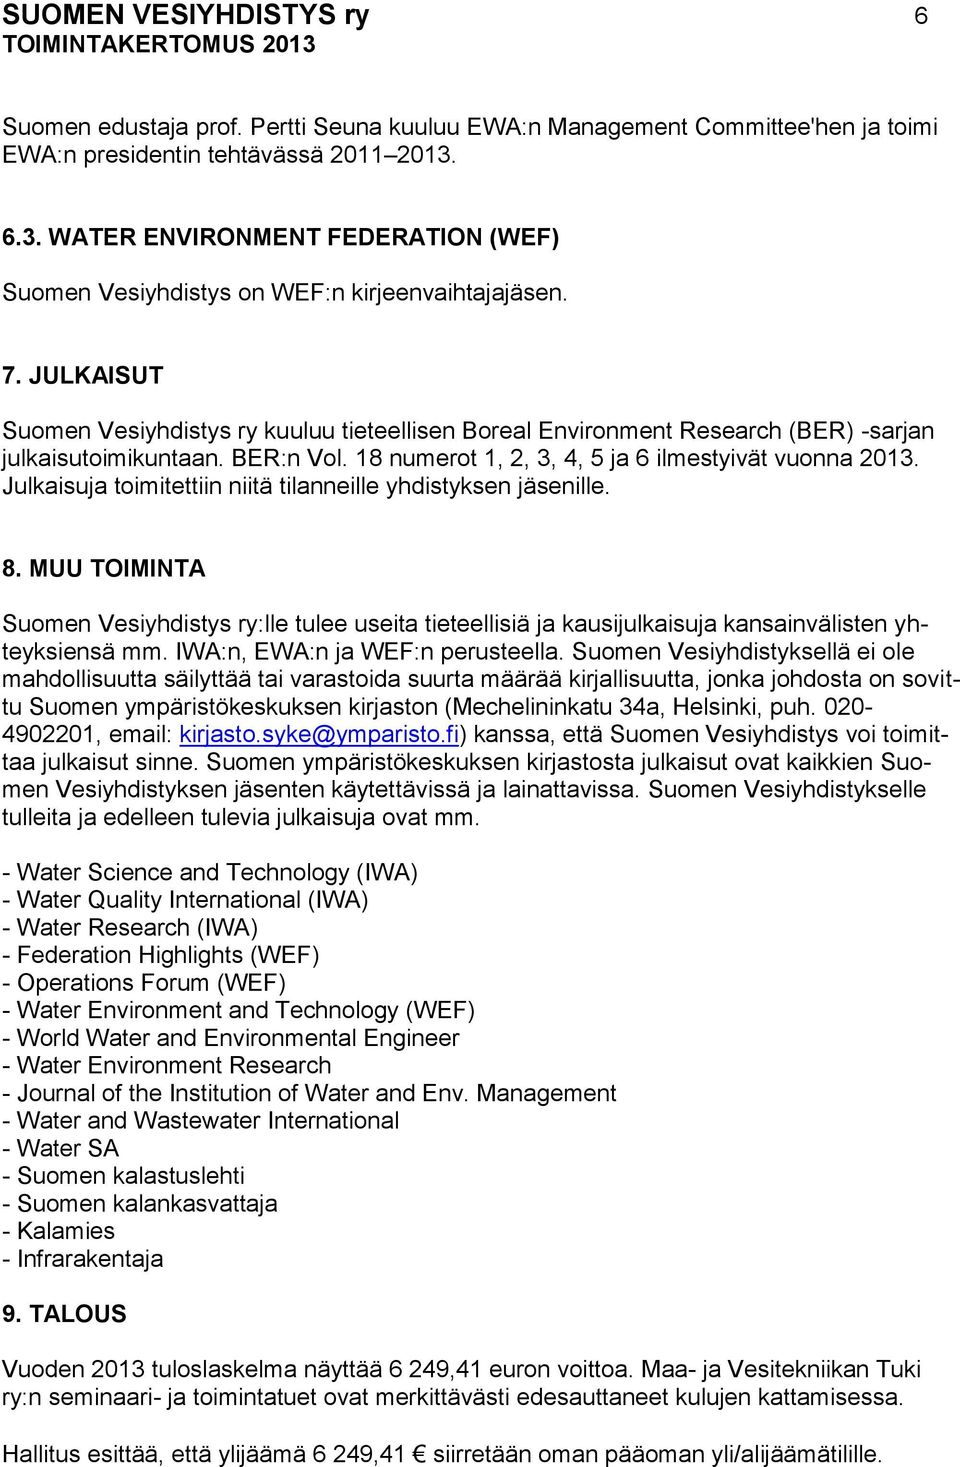 JULKAISUT Suomen Vesiyhdistys ry kuuluu tieteellisen Boreal Environment Research (BER) -sarjan julkaisutoimikuntaan. BER:n Vol. 18 numerot 1, 2, 3, 4, 5 ja 6 ilmestyivät vuonna 2013.